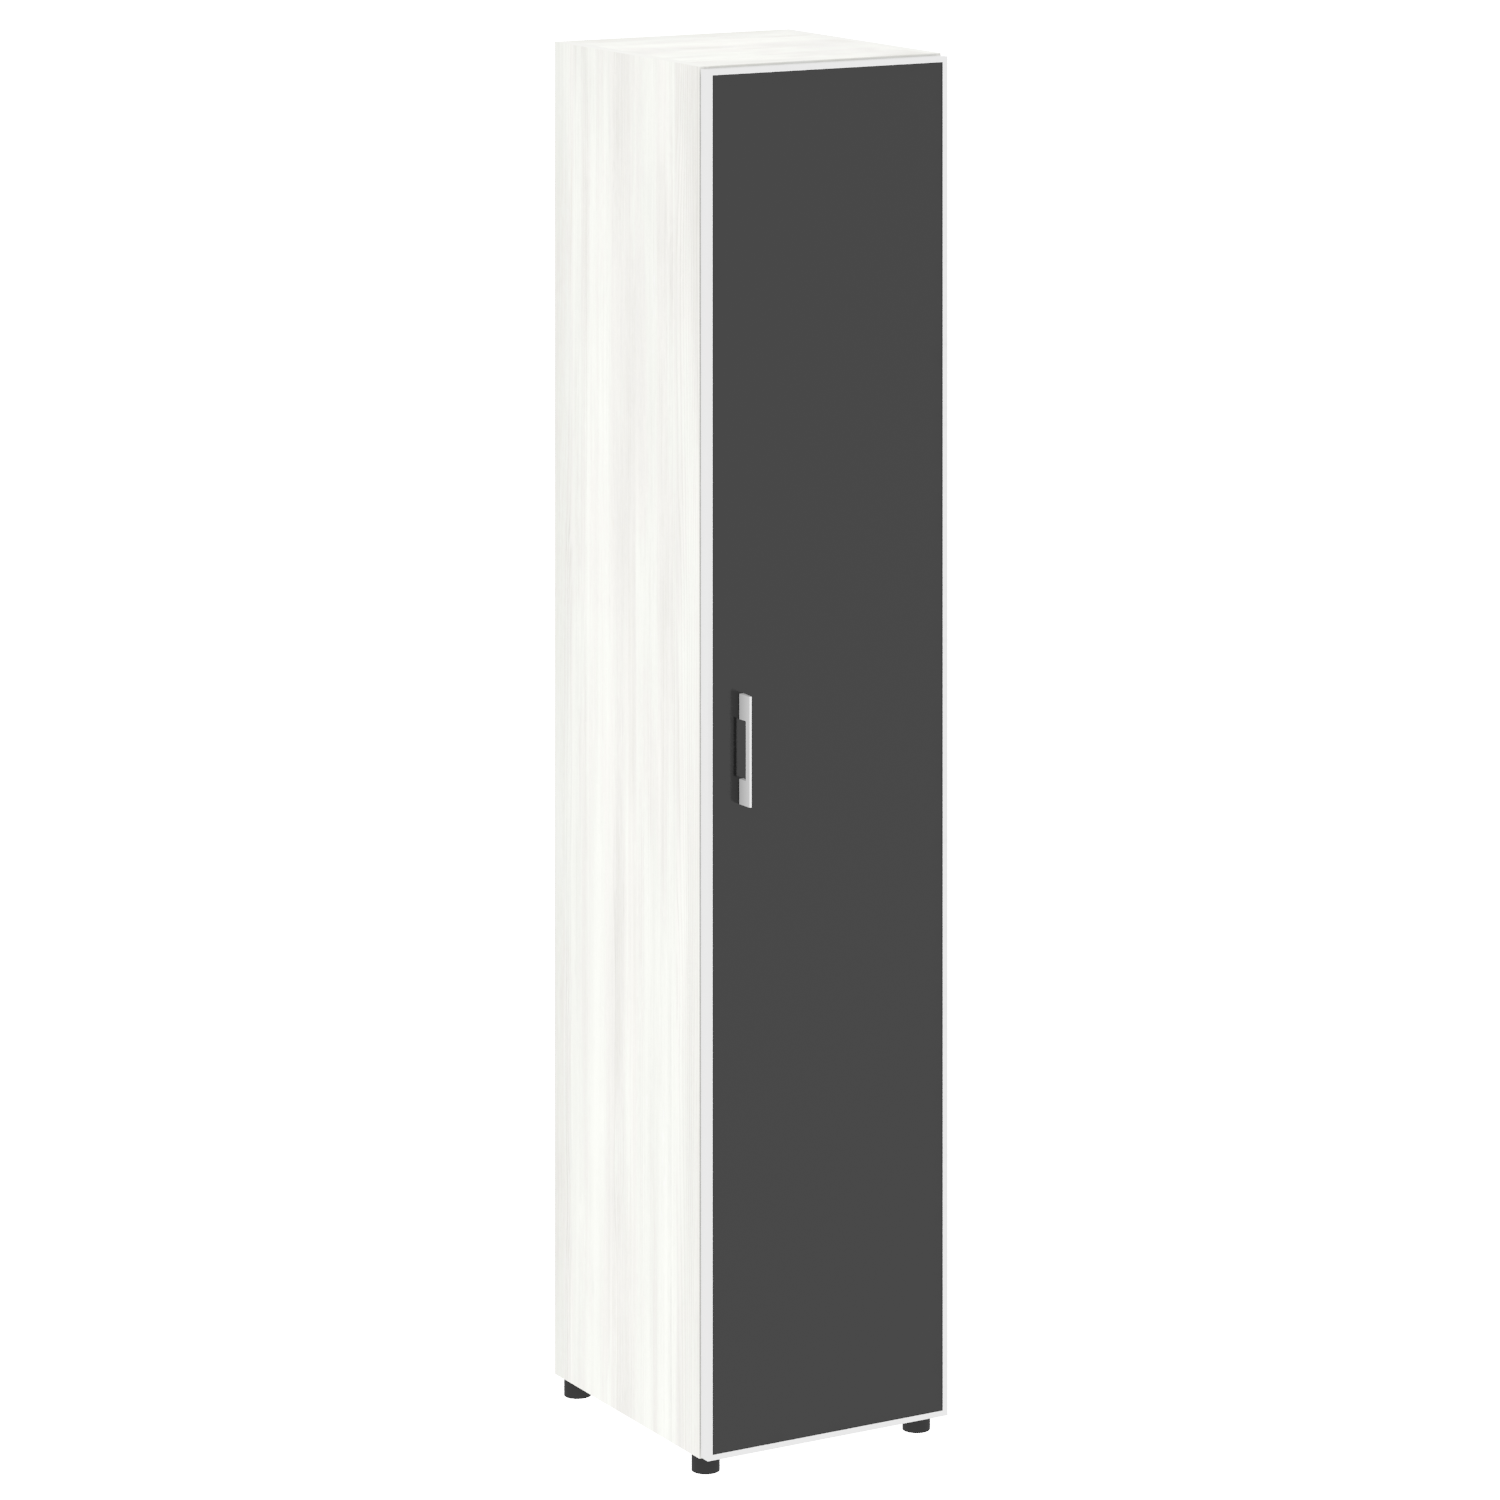 Шкаф высокий узкий Yalta (черный/белый), LT.SU-1.10 R L/R, рис. 4